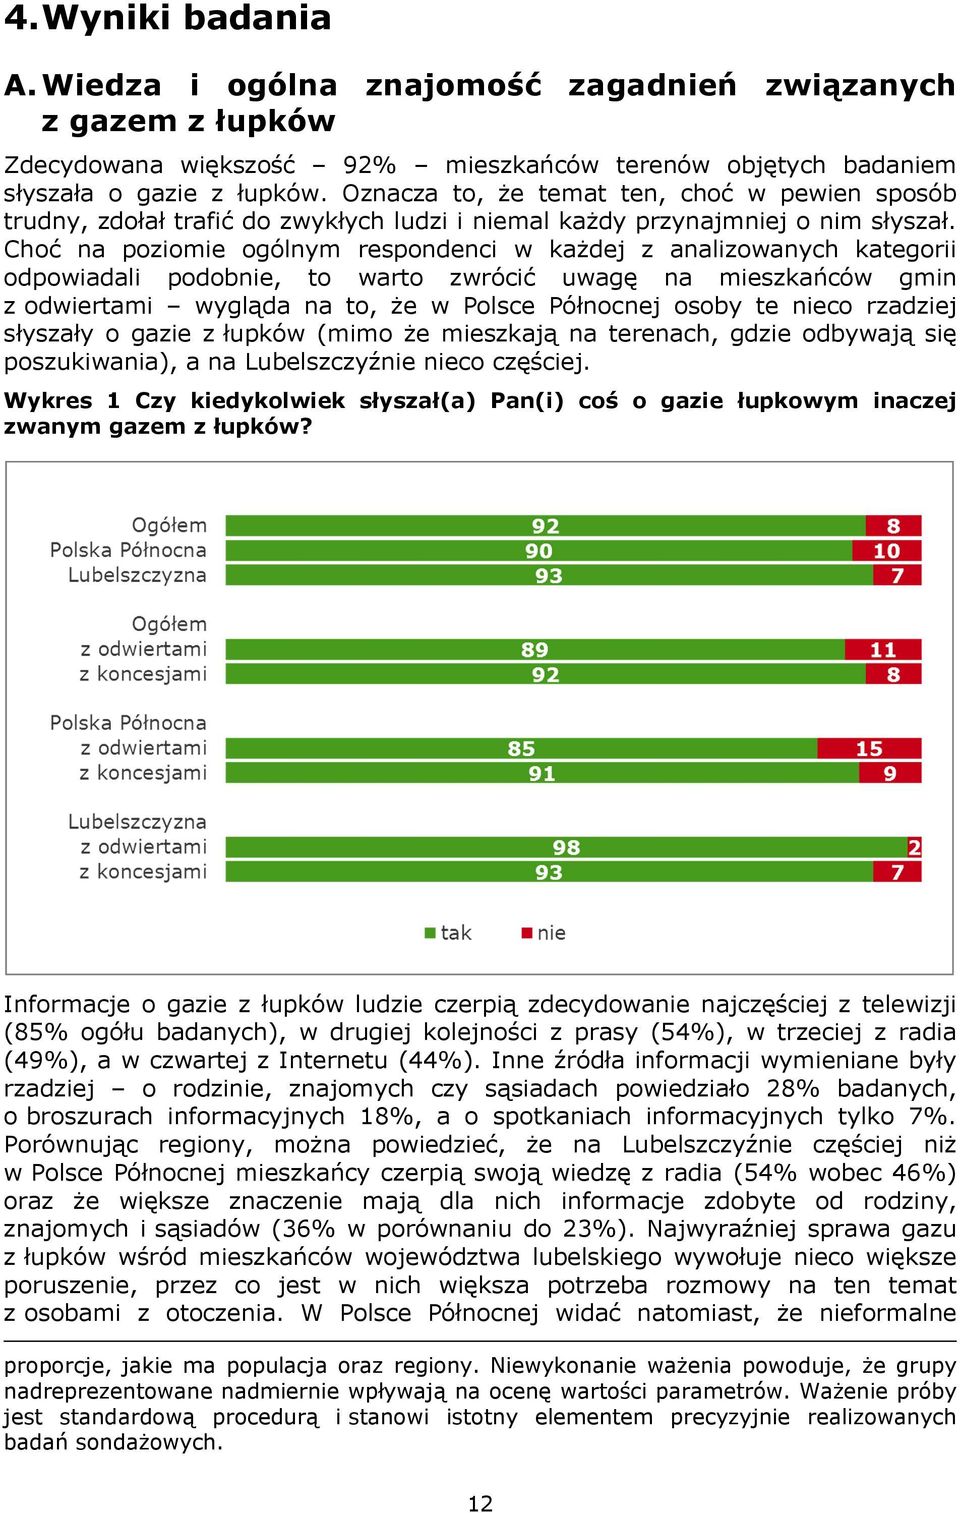 Choć na poziomie ogólnym respondenci w każdej z analizowanych kategorii odpowiadali podobnie, to warto zwrócić uwagę na mieszkańców gmin z odwiertami wygląda na to, że w Polsce Północnej osoby te